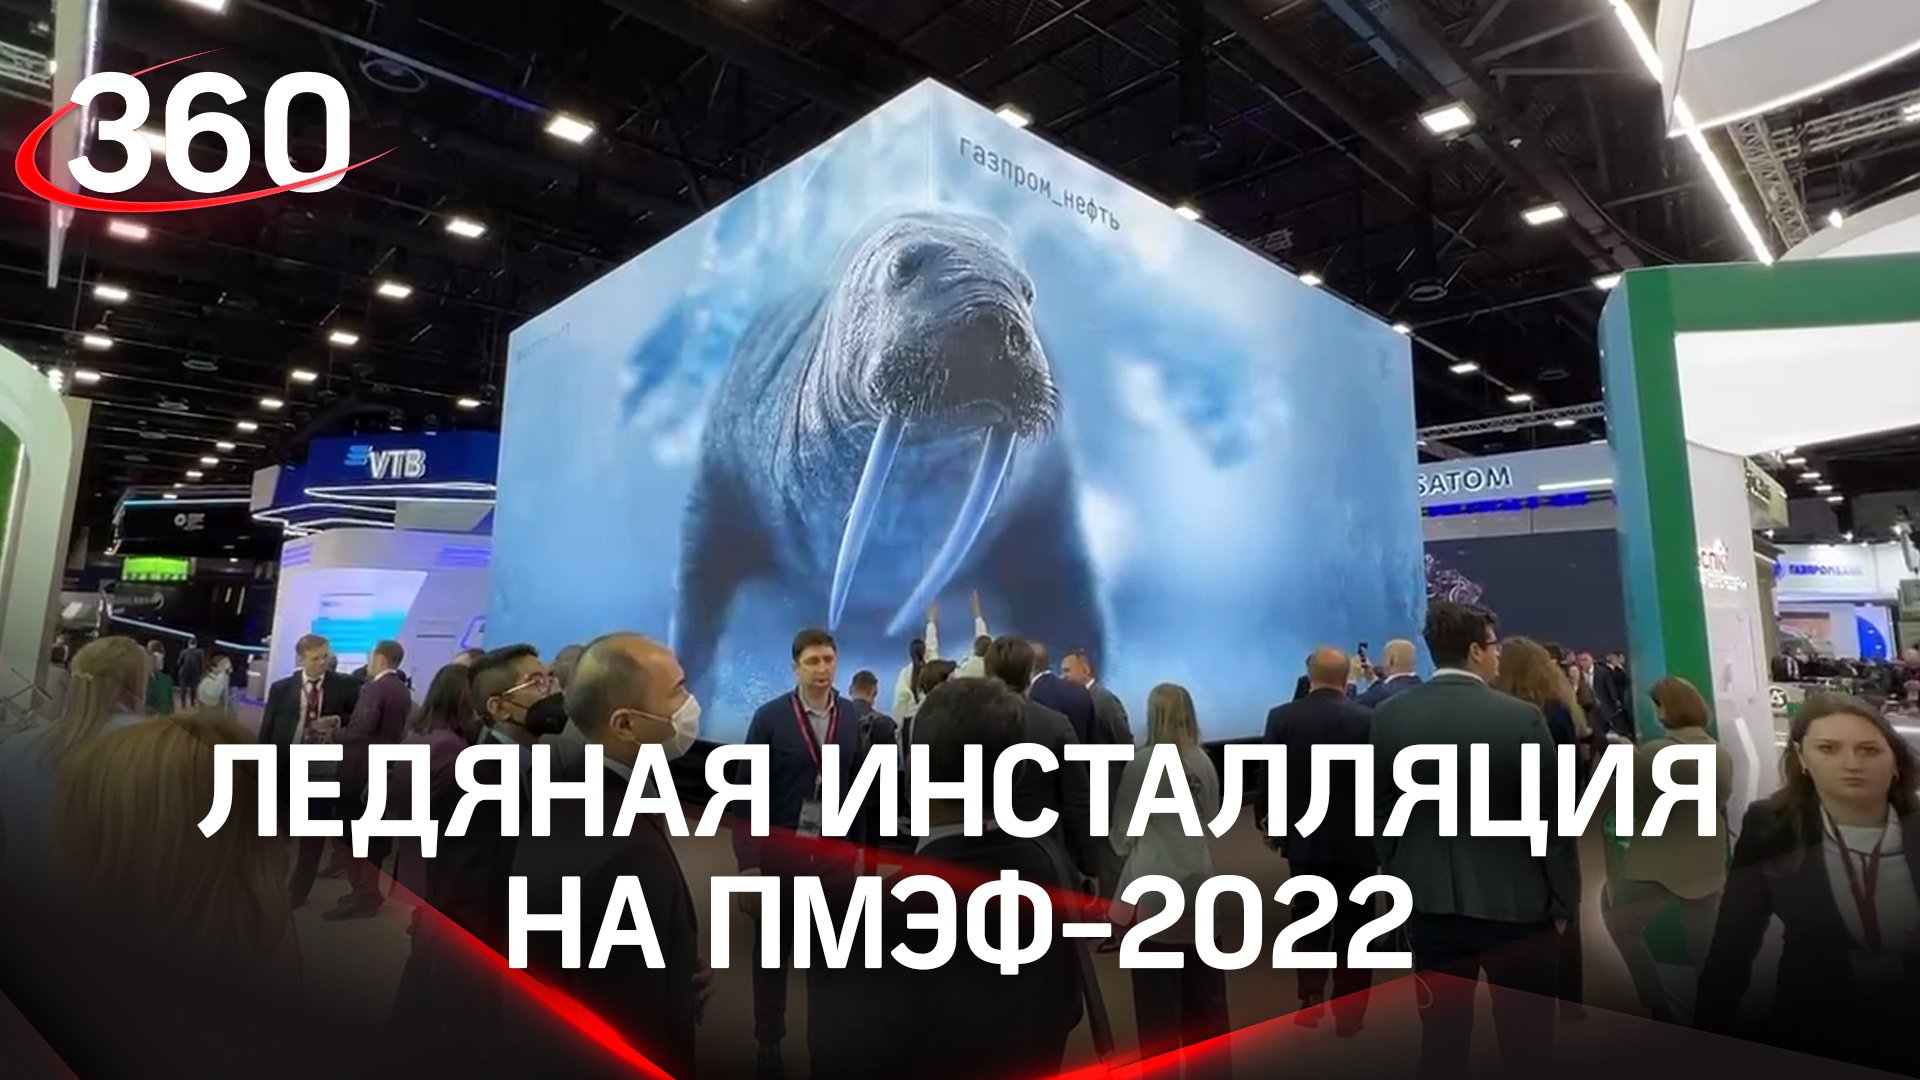 Арктическая медитация: рассказываем все про гигантский ледяной стенд на ПМЭФ-2022